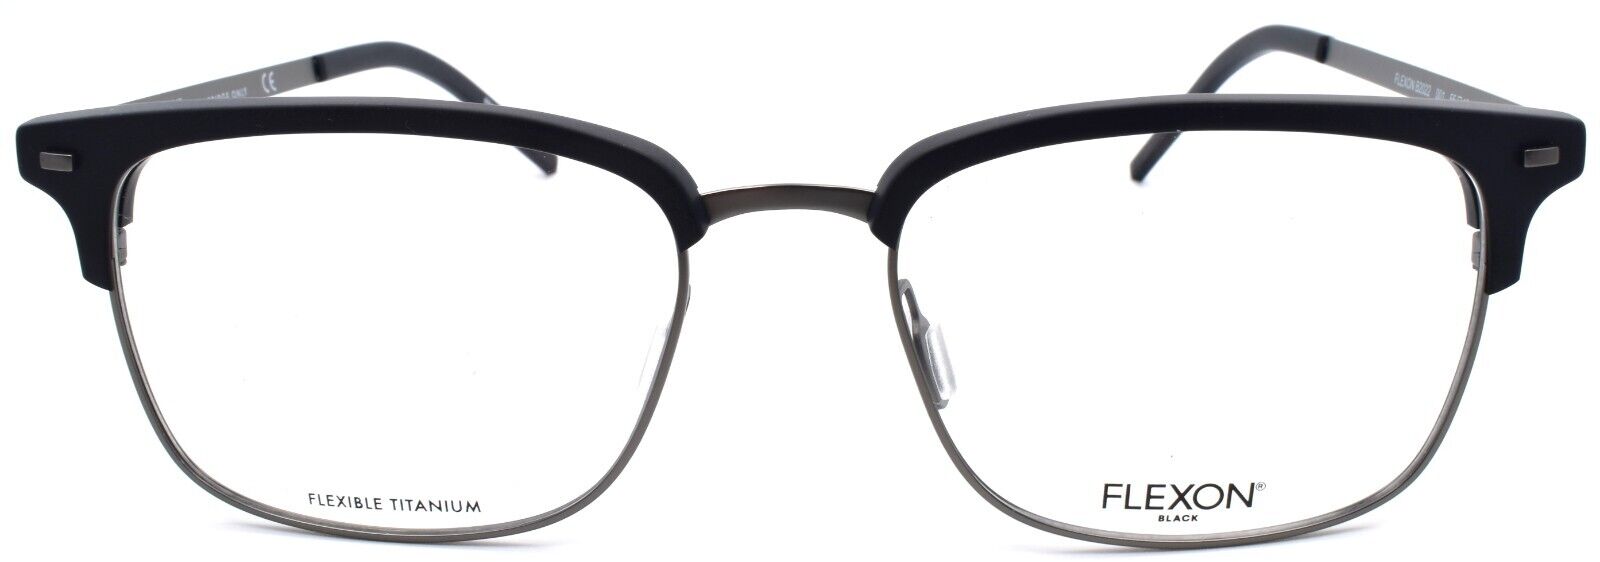 2-Flexon B2022 001 Men's Eyeglasses Frames Black 55-19-145 Flexible Titanium-886895450454-IKSpecs